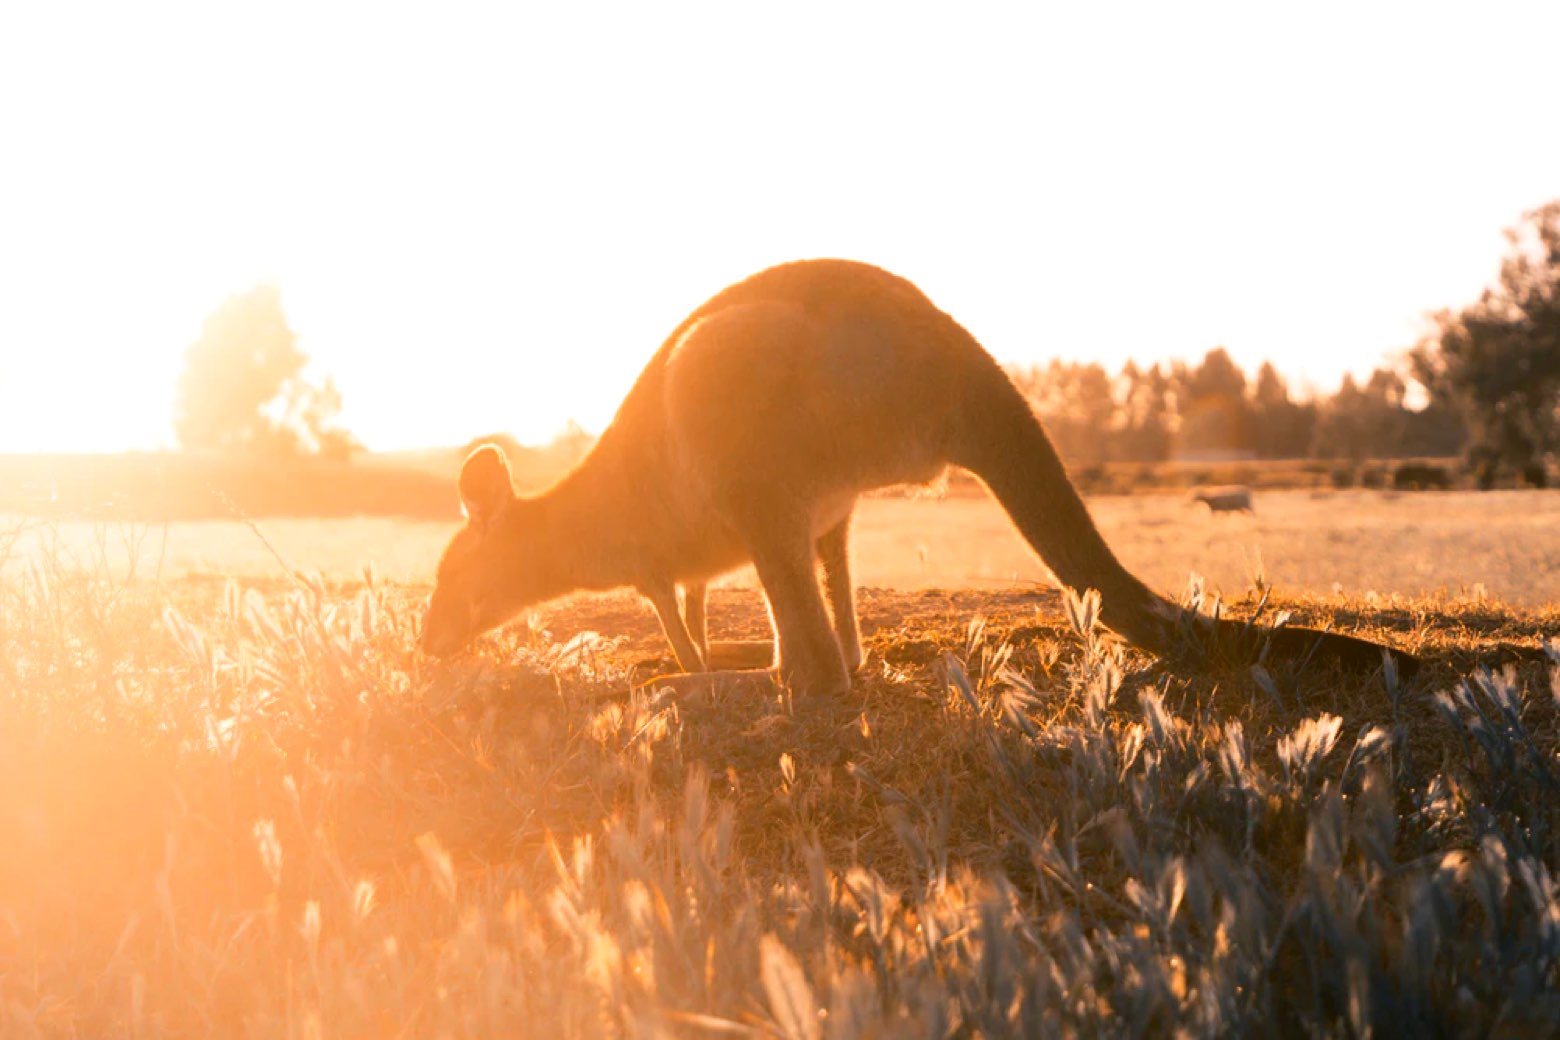 A Kargaroo gracing at sunrise